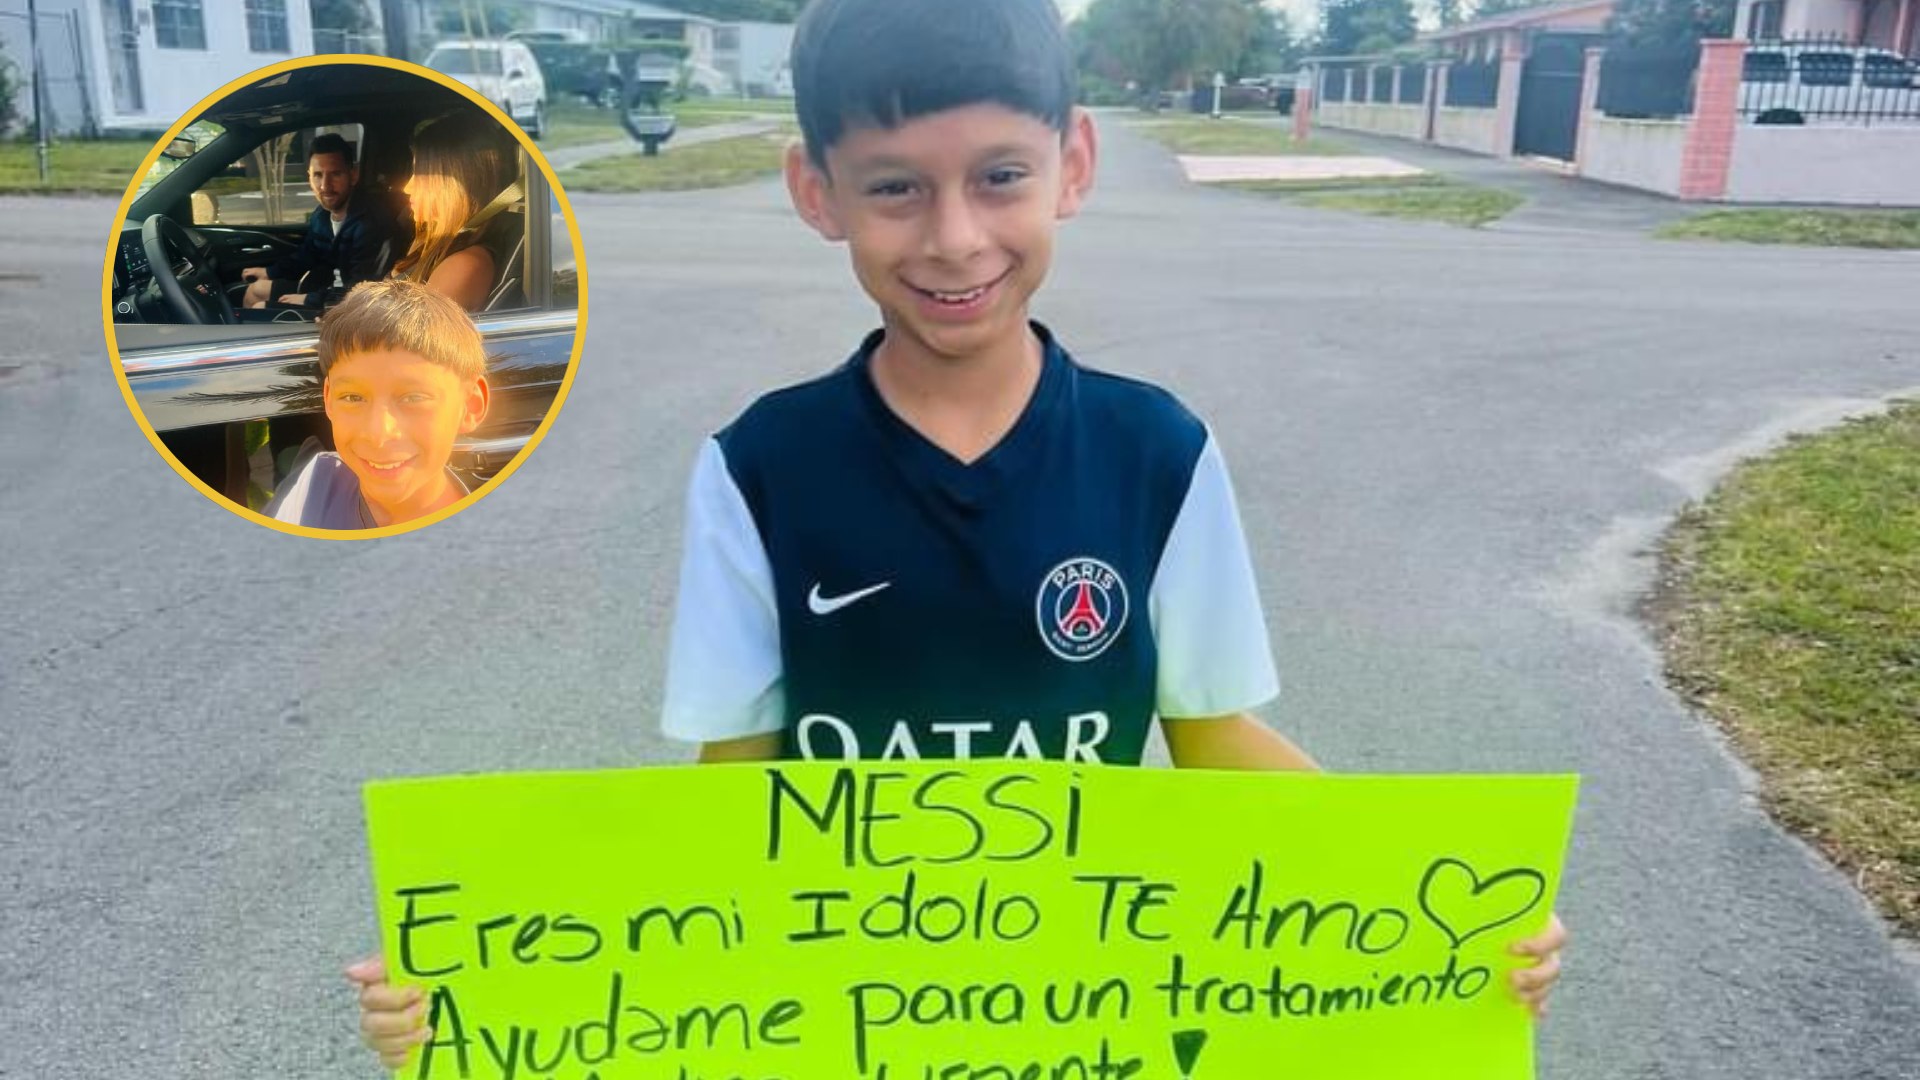 Un video ha estado circulando en las redes sociales, mostrando a una familia hondureña acercándose a la residencia del Lionel Messi en Miami.